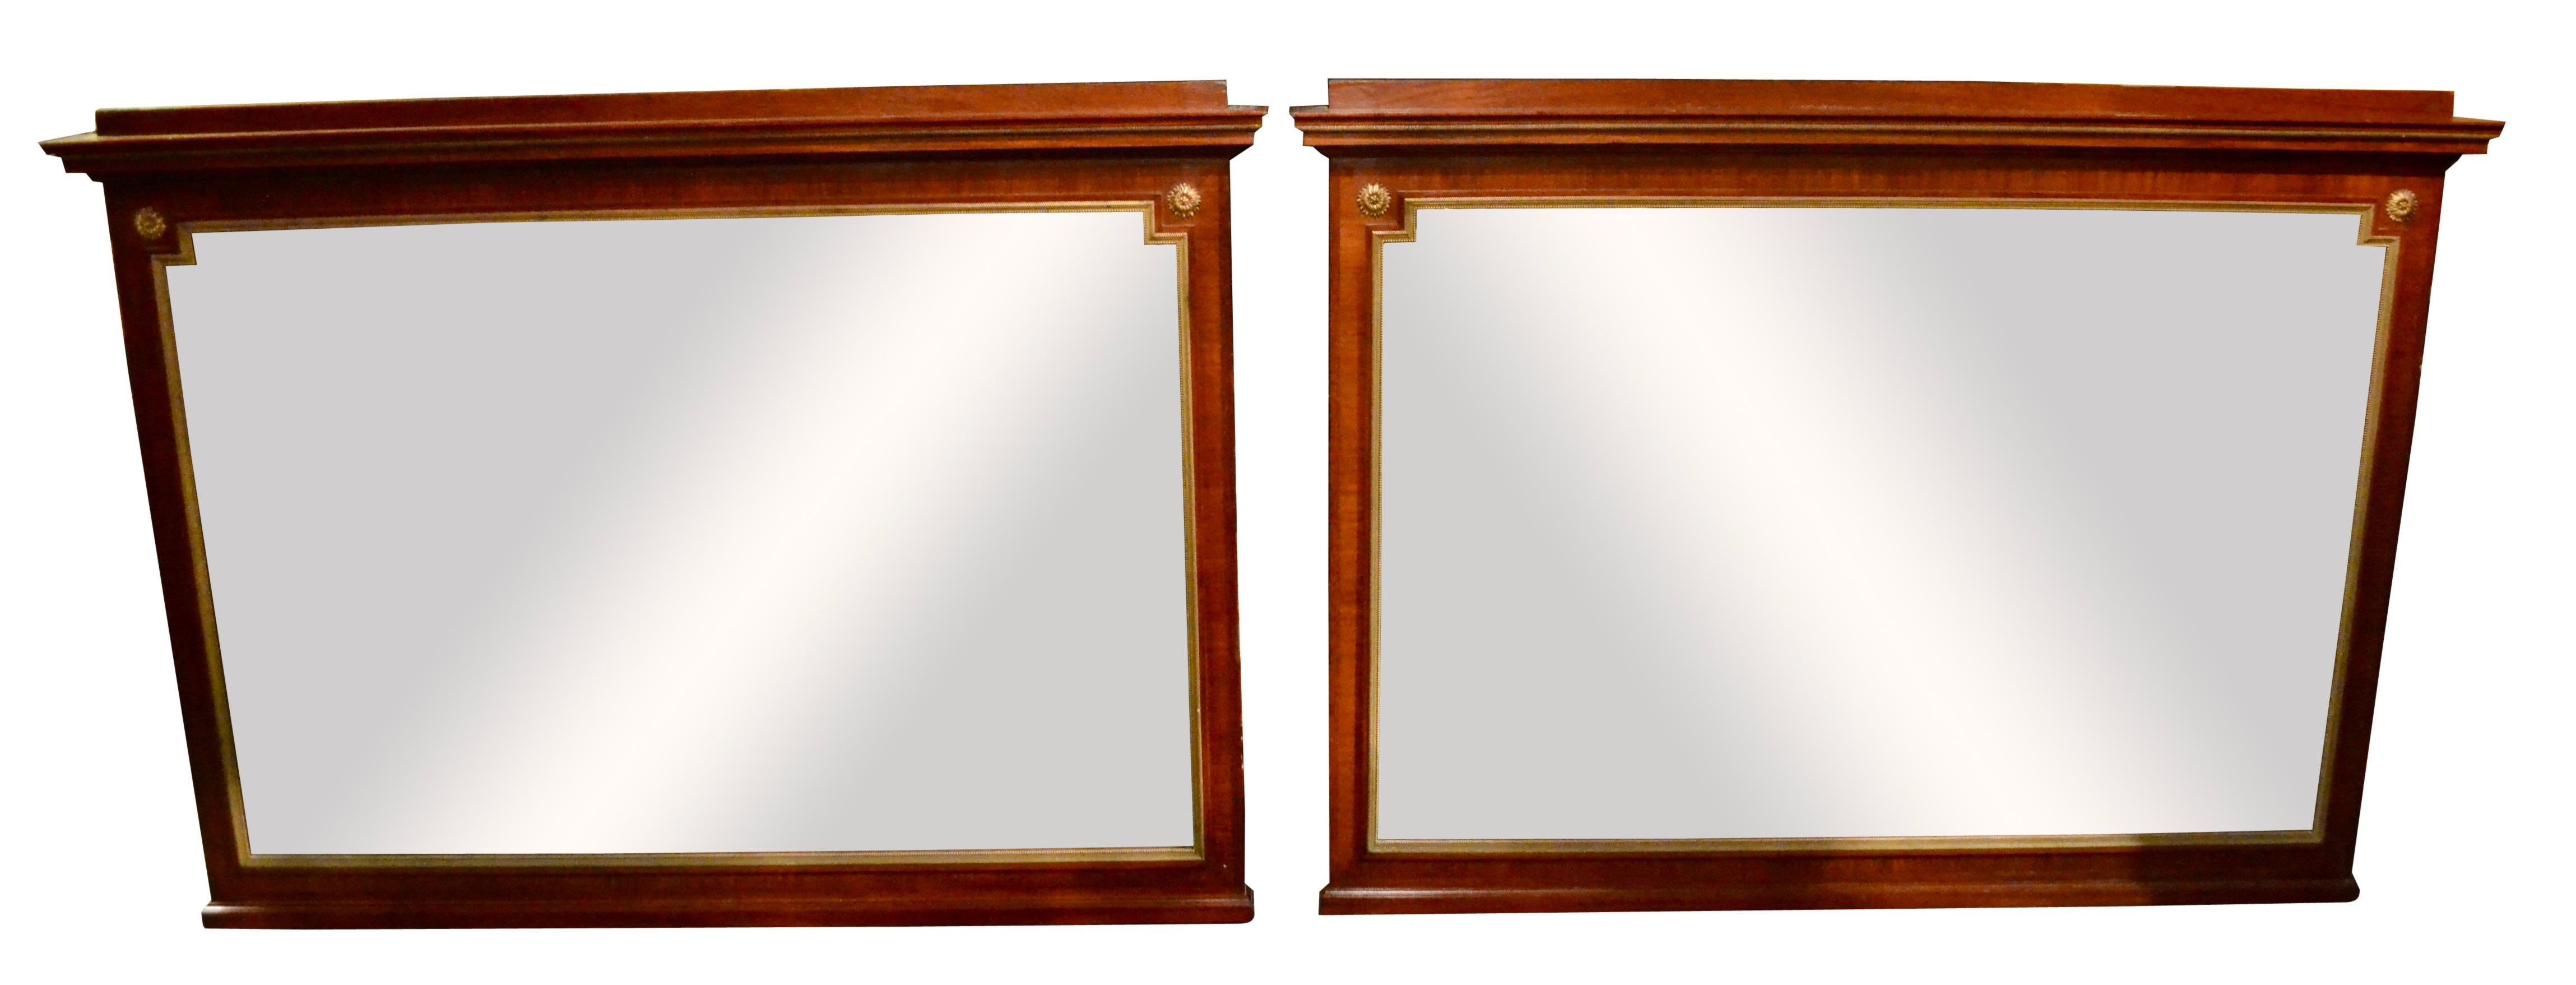 Une belle paire de miroirs rectangulaires de style Empire relativement grands ; les cadres ont une moulure en bronze doré autour du verre, et des rosettes dorées sur les deux côtés supérieurs ; les miroirs sont biseautés sur tous les côtés ; il y a